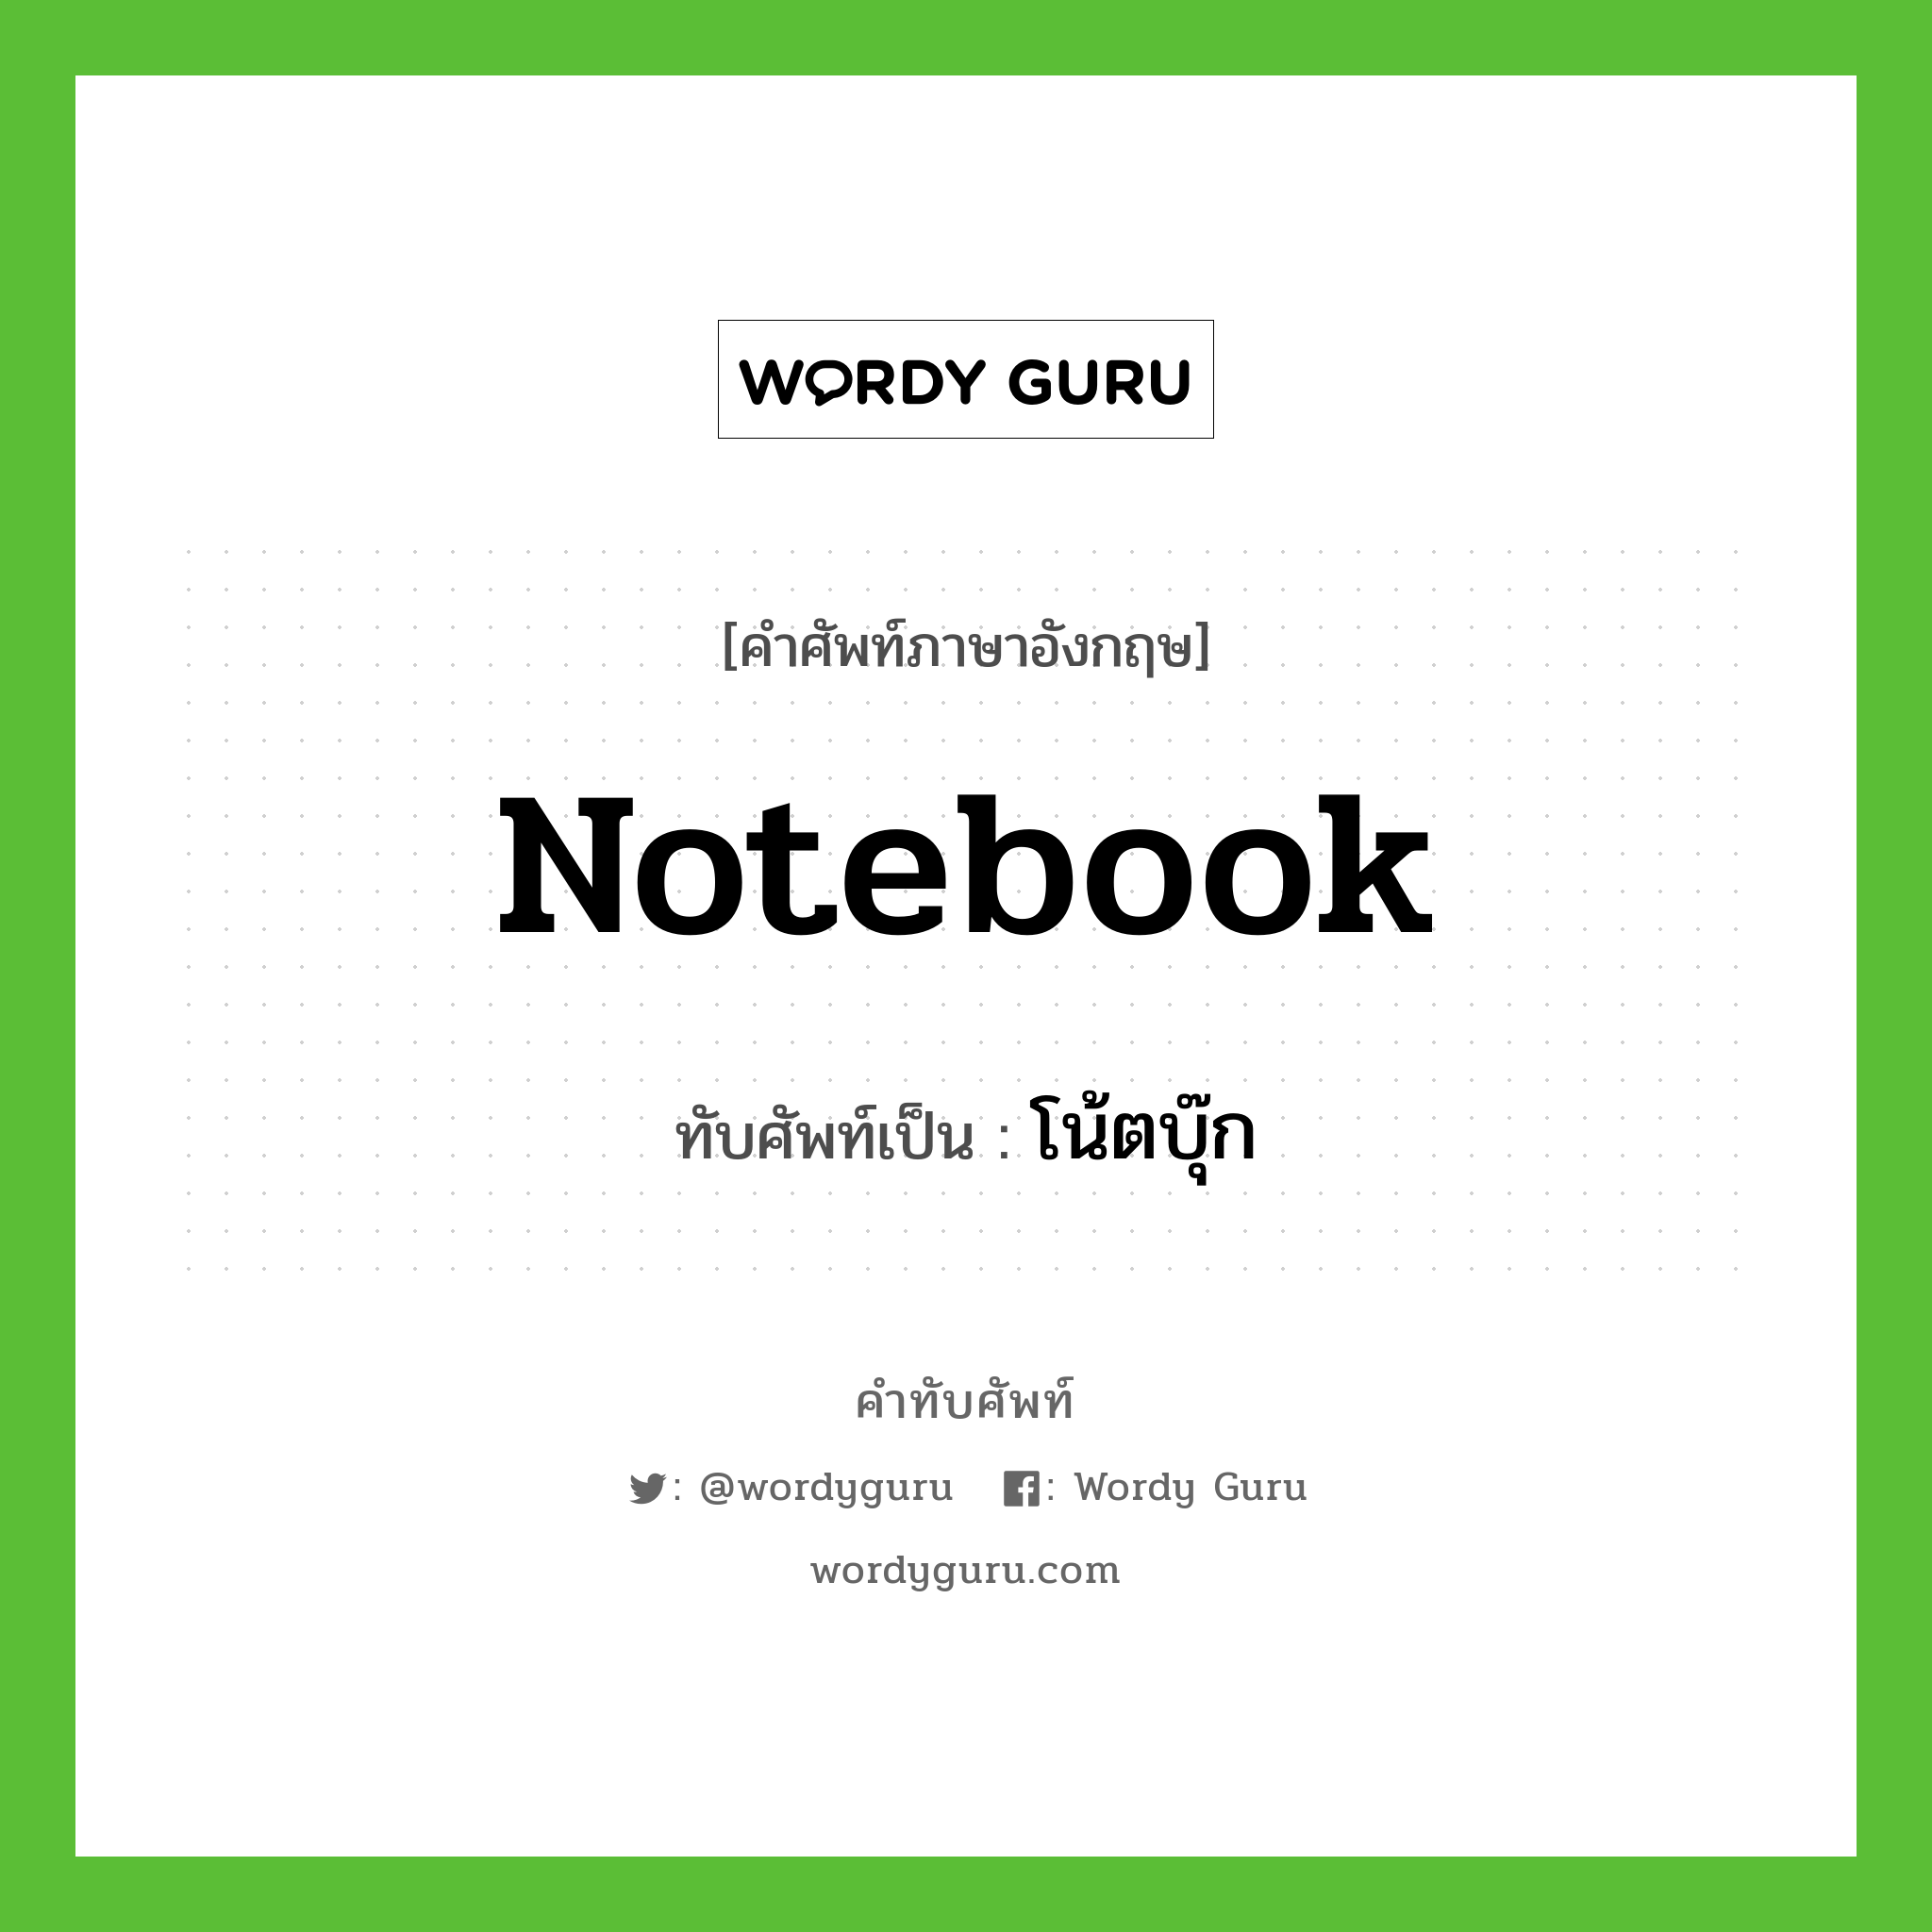 notebook เขียนเป็นคำไทยว่าอะไร?, คำศัพท์ภาษาอังกฤษ notebook ทับศัพท์เป็น โน้ตบุ๊ก